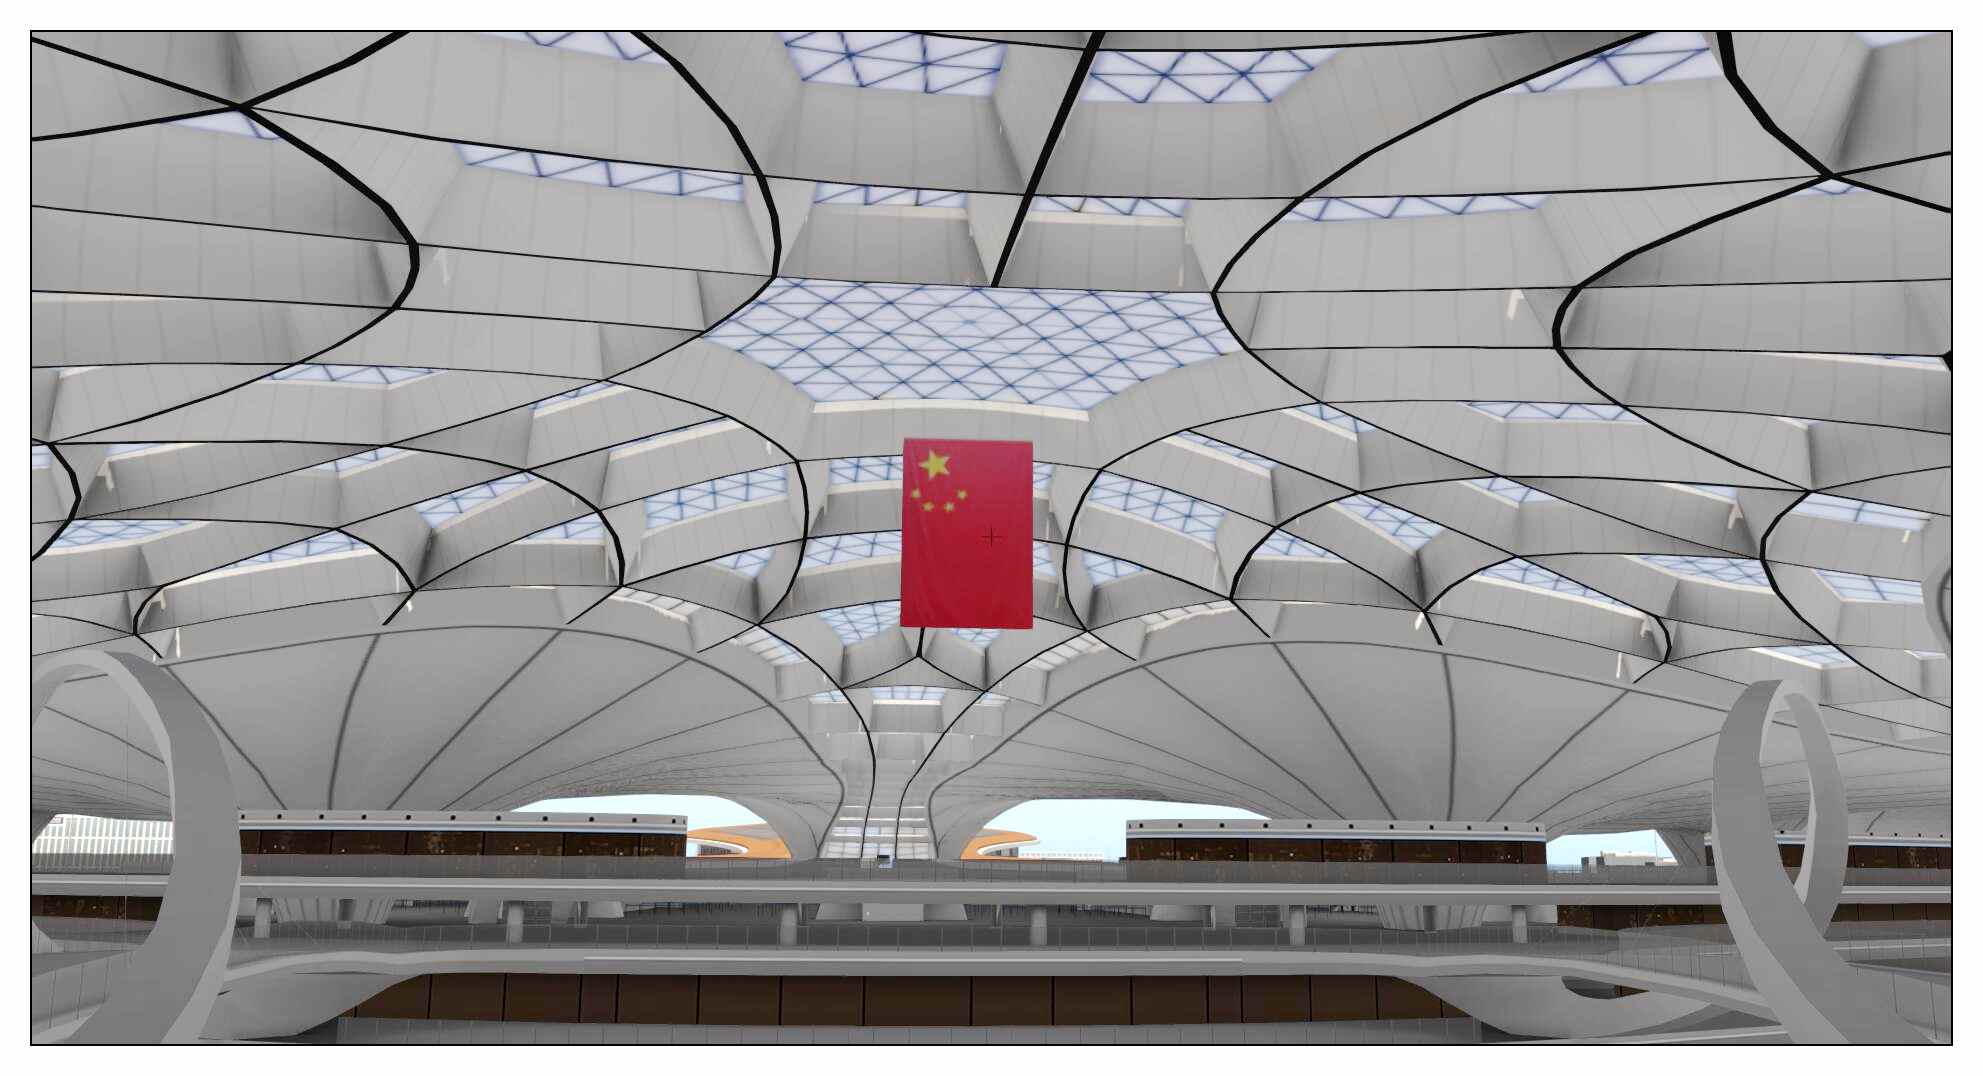 【X-Plane】ZBAD北京大兴国际机场-正式发布-6398 